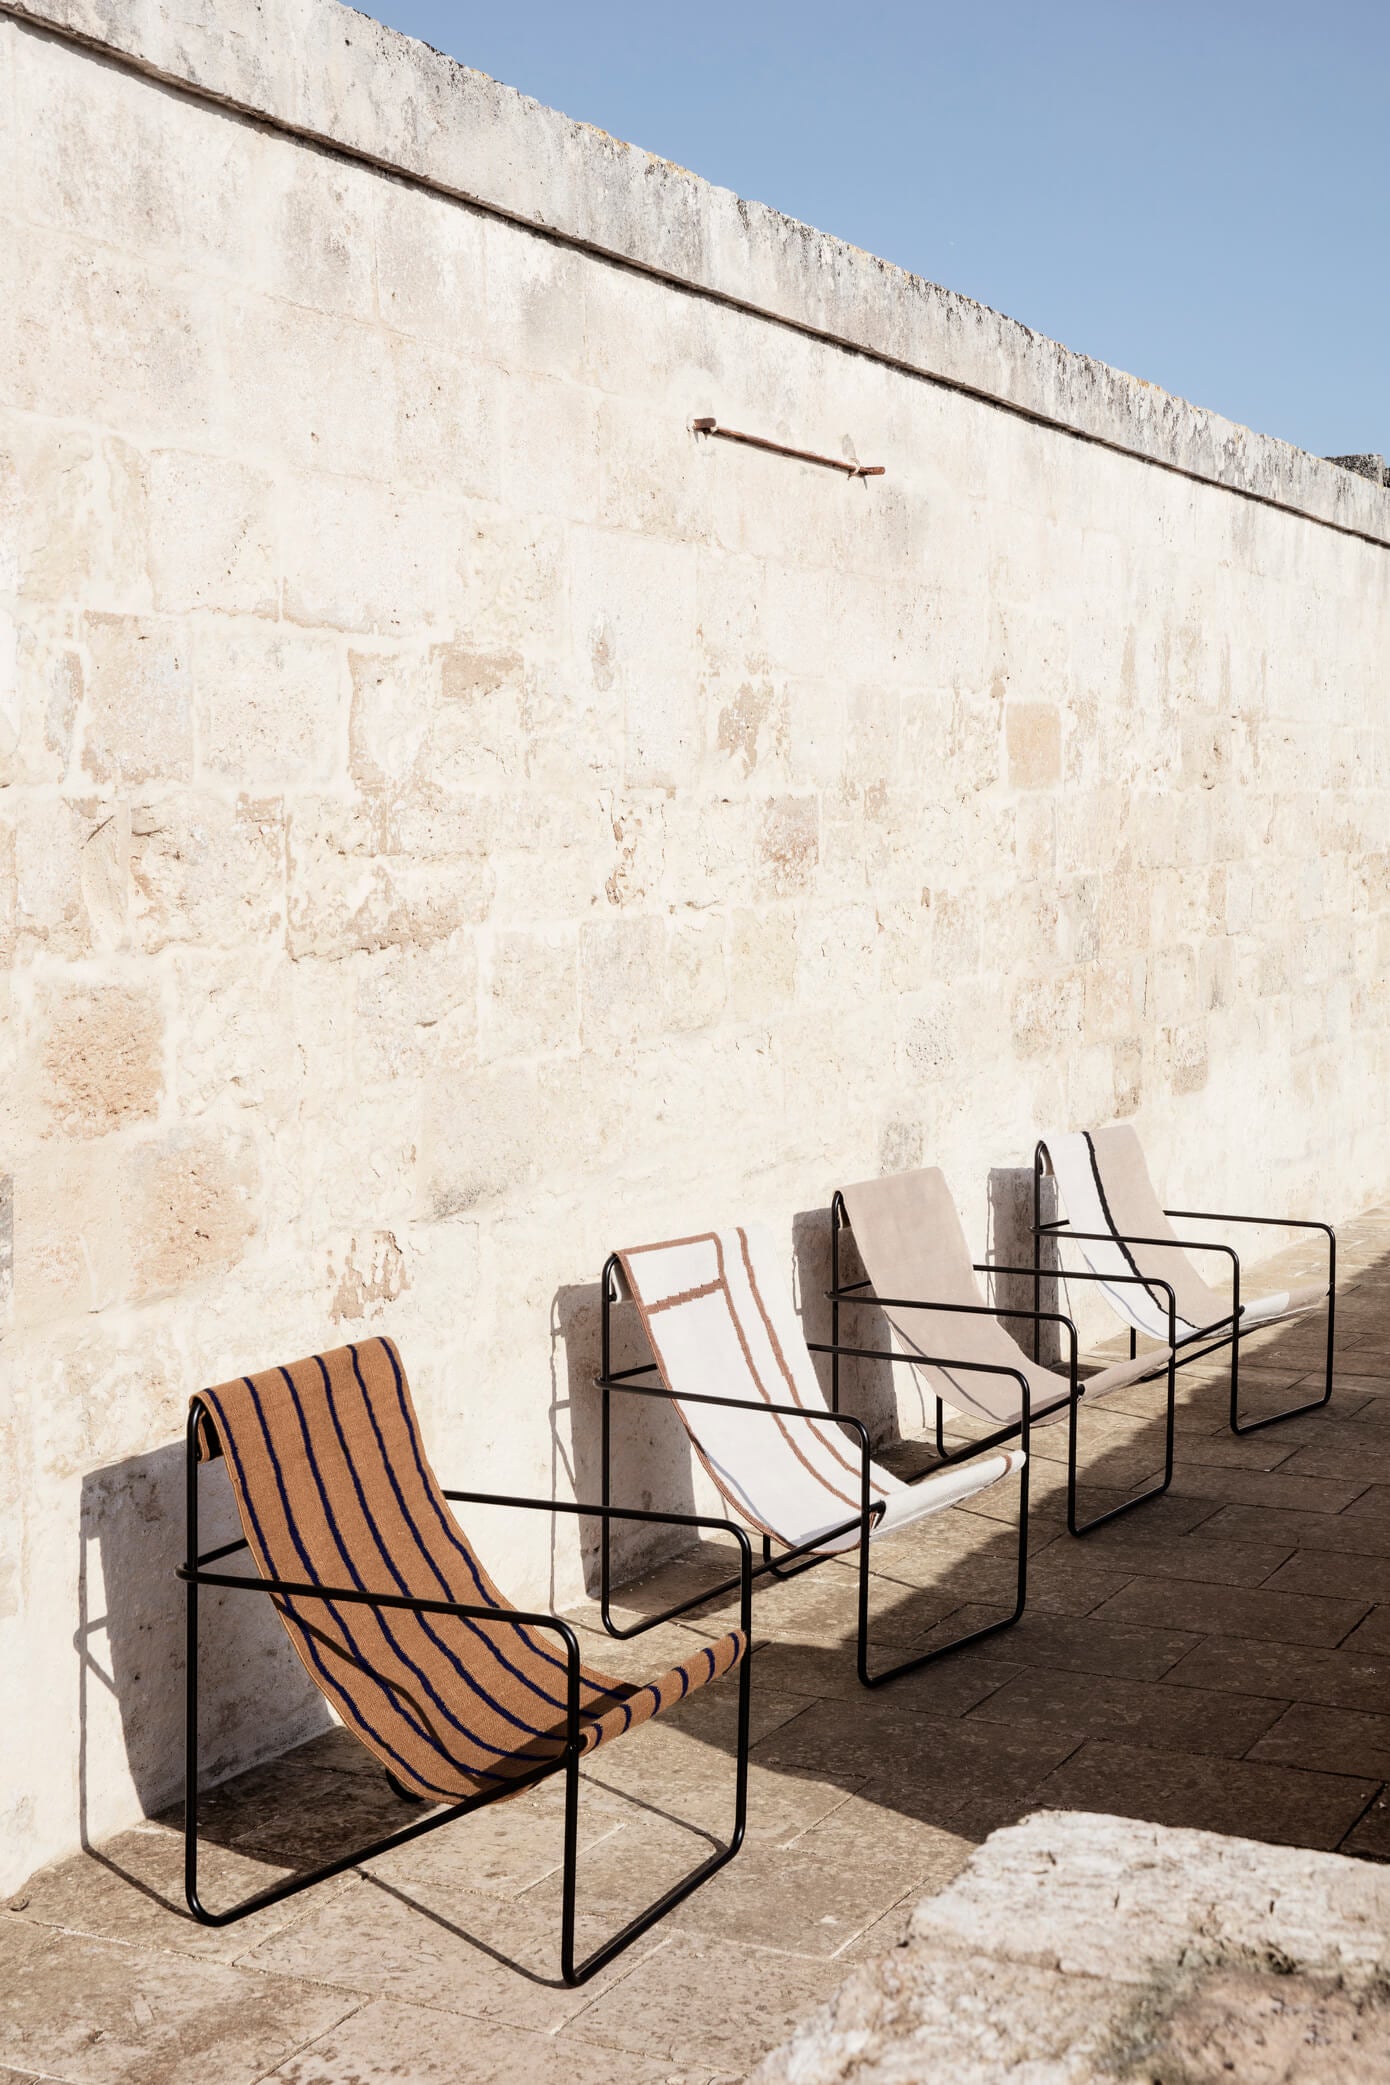 Desert Lounge Chair | Black Frame + Soil Fabric | by ferm Living - Lifestory - ferm Living